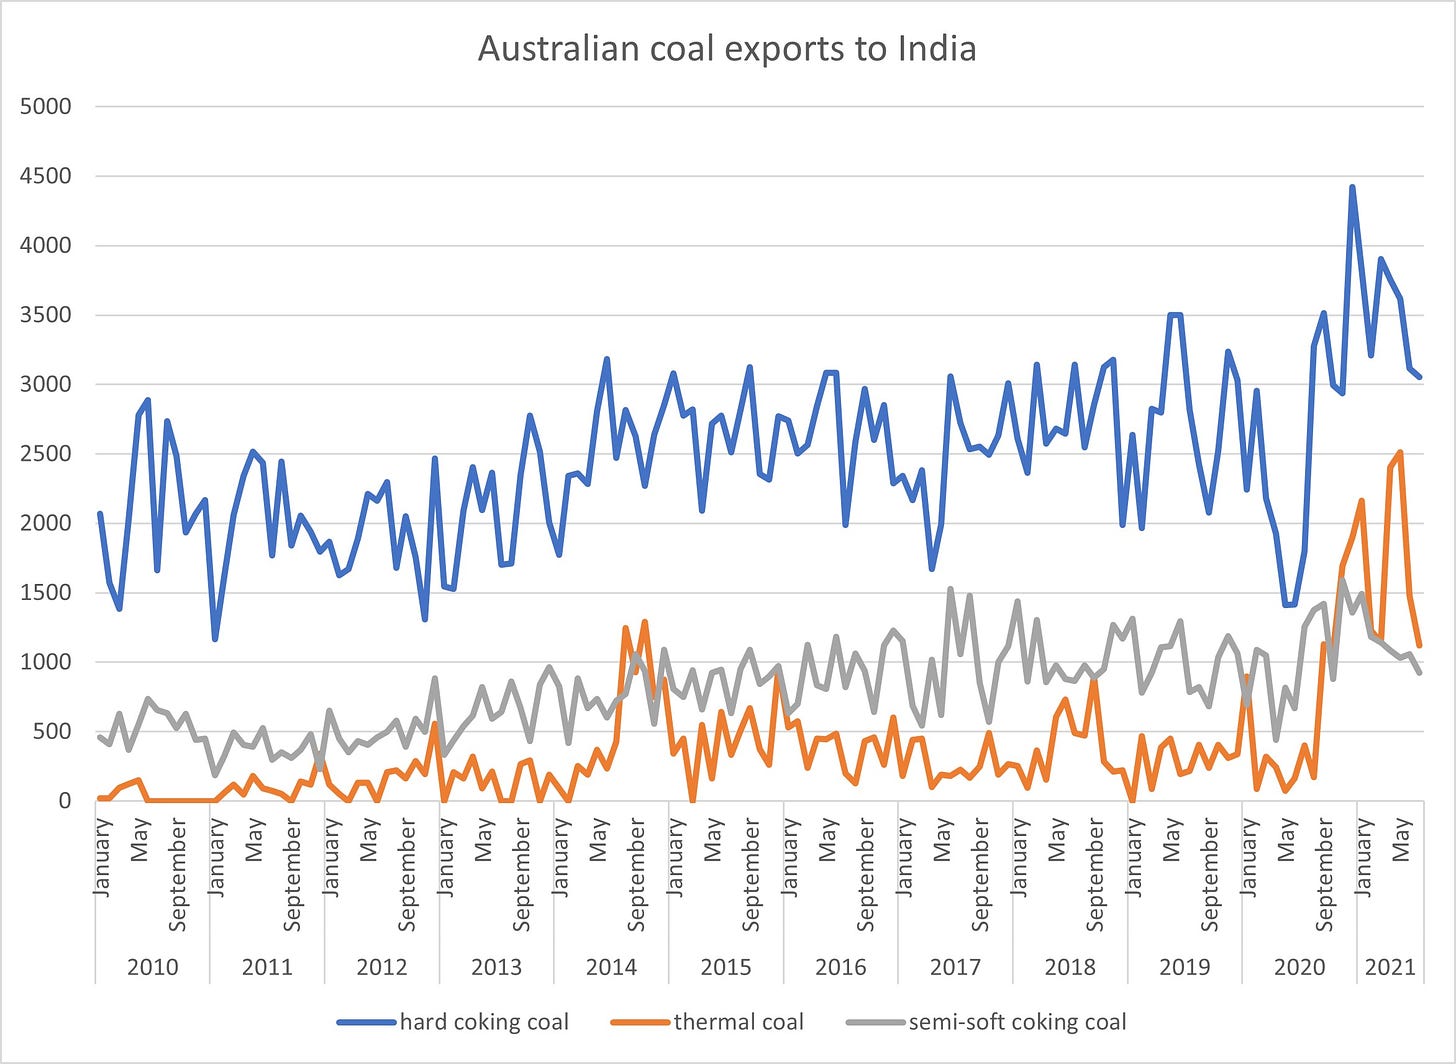 Indian-Australian coal ties tighten | Argus Media